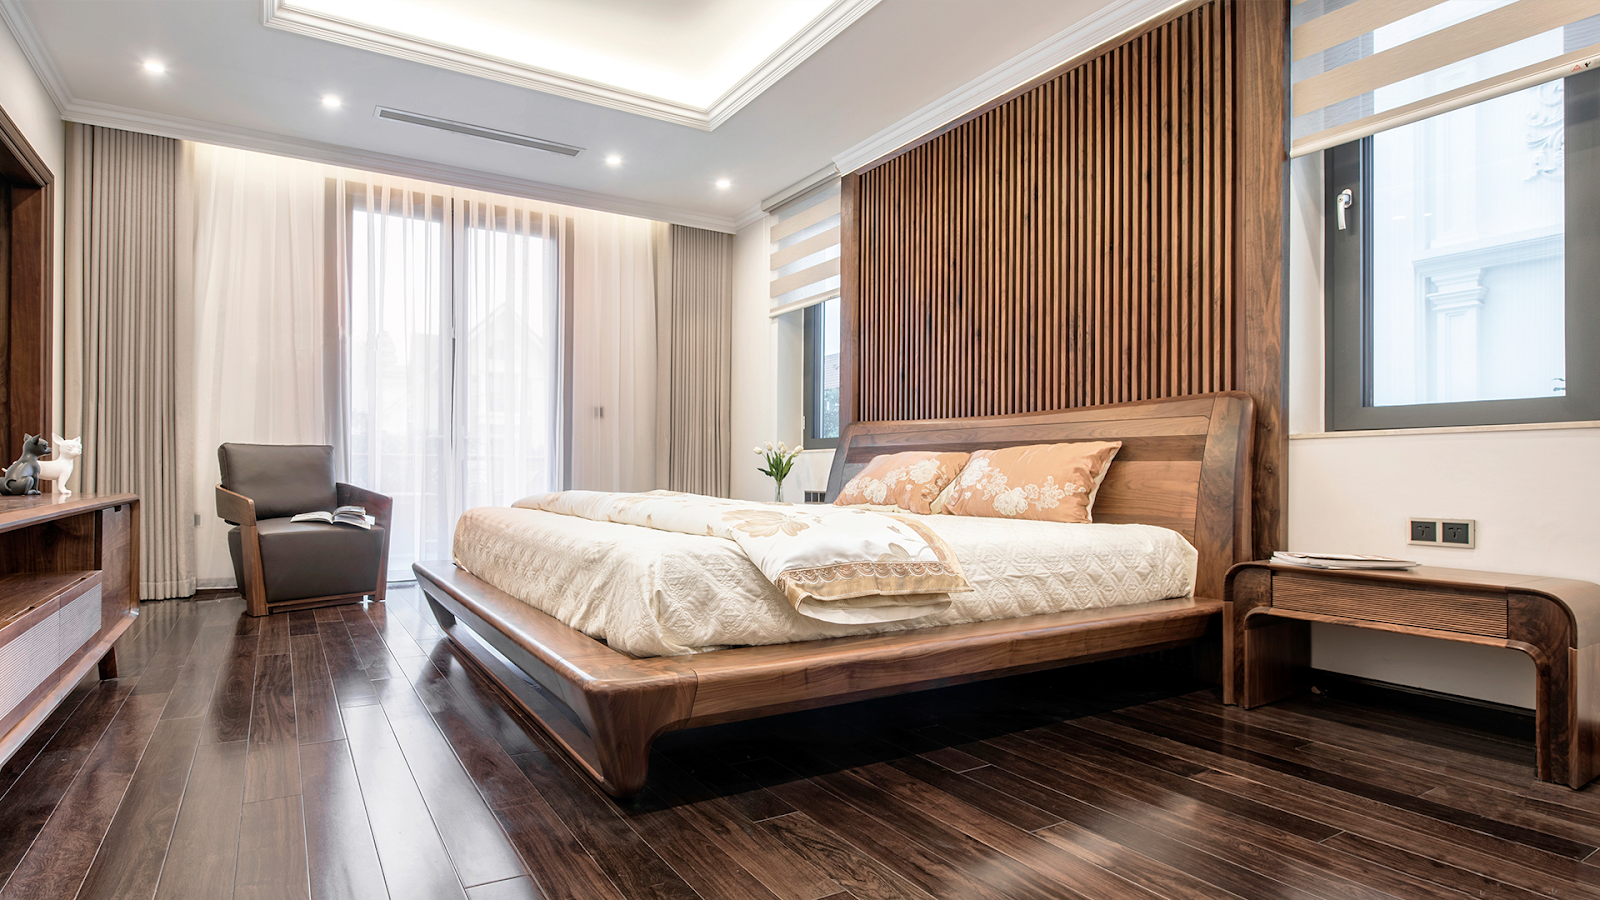 Bạn đang tìm kiếm một phòng ngủ rộng 40m2 hiện đại và tiện nghi nhất? Chúng tôi làm được điều đó. Với sự kết hợp giữa thiết kế hiện đại và sự thông thoáng của không gian, phòng ngủ của bạn sẽ trở nên rộng rãi và hữu ích hơn. Hãy để chúng tôi giúp bạn tạo ra một không gian phòng ngủ hoàn hảo.